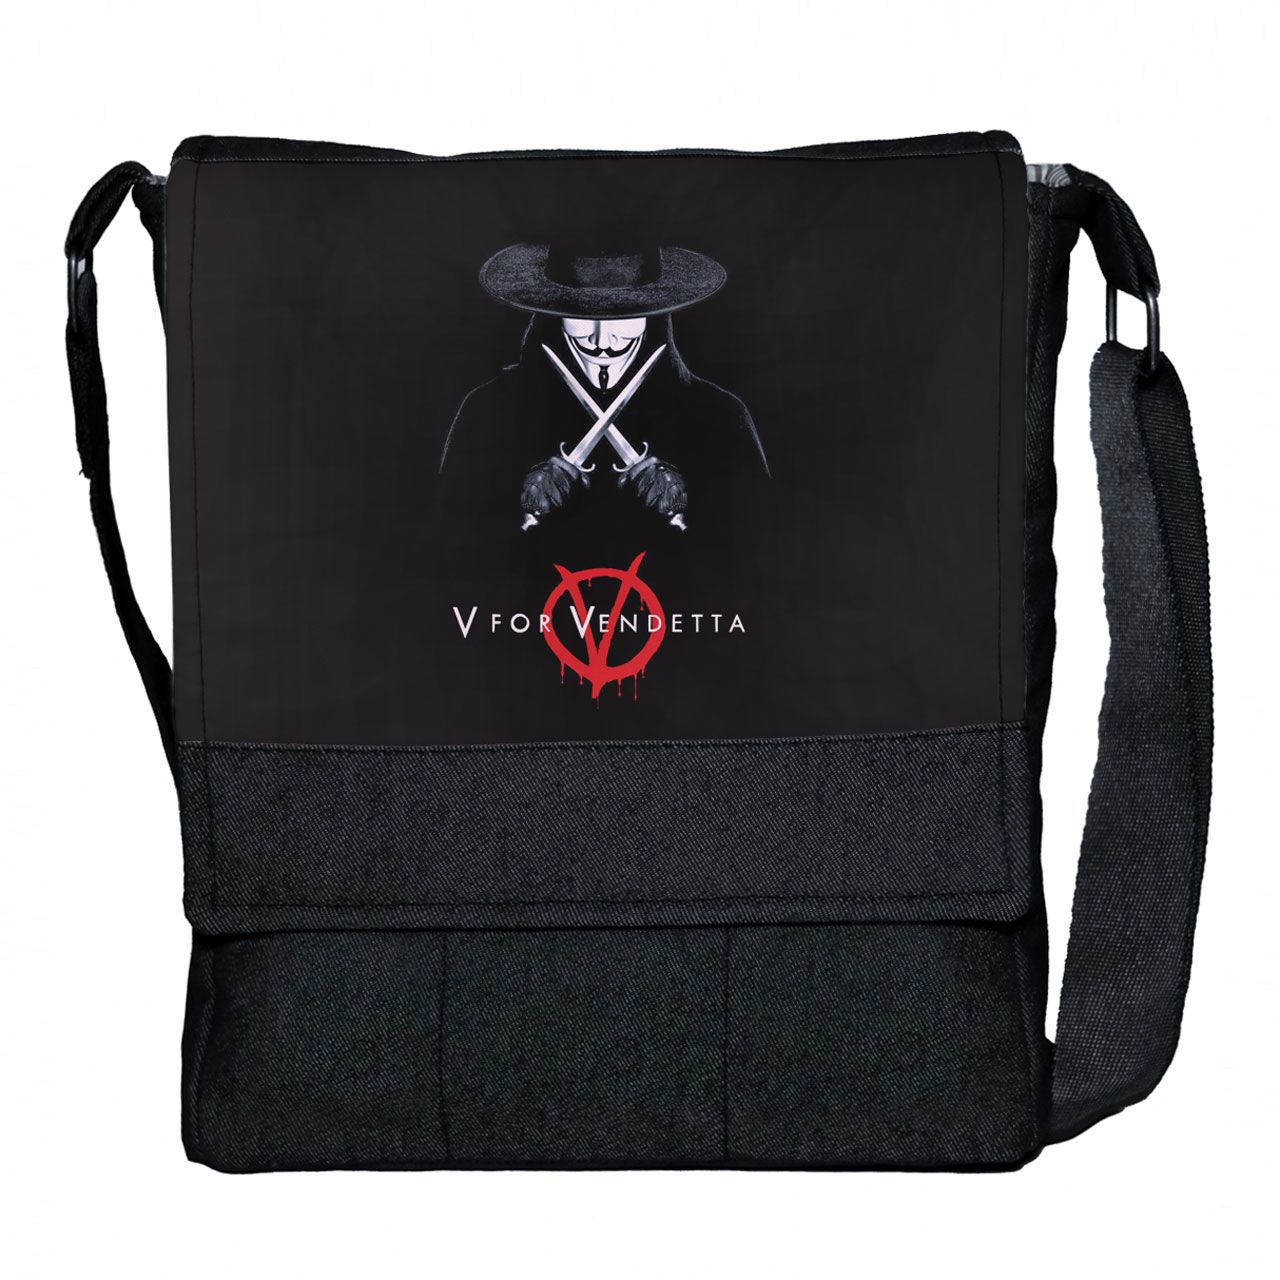 کیف دوشی چی چاپ طرح V For Vendetta کد 65684 -  - 1